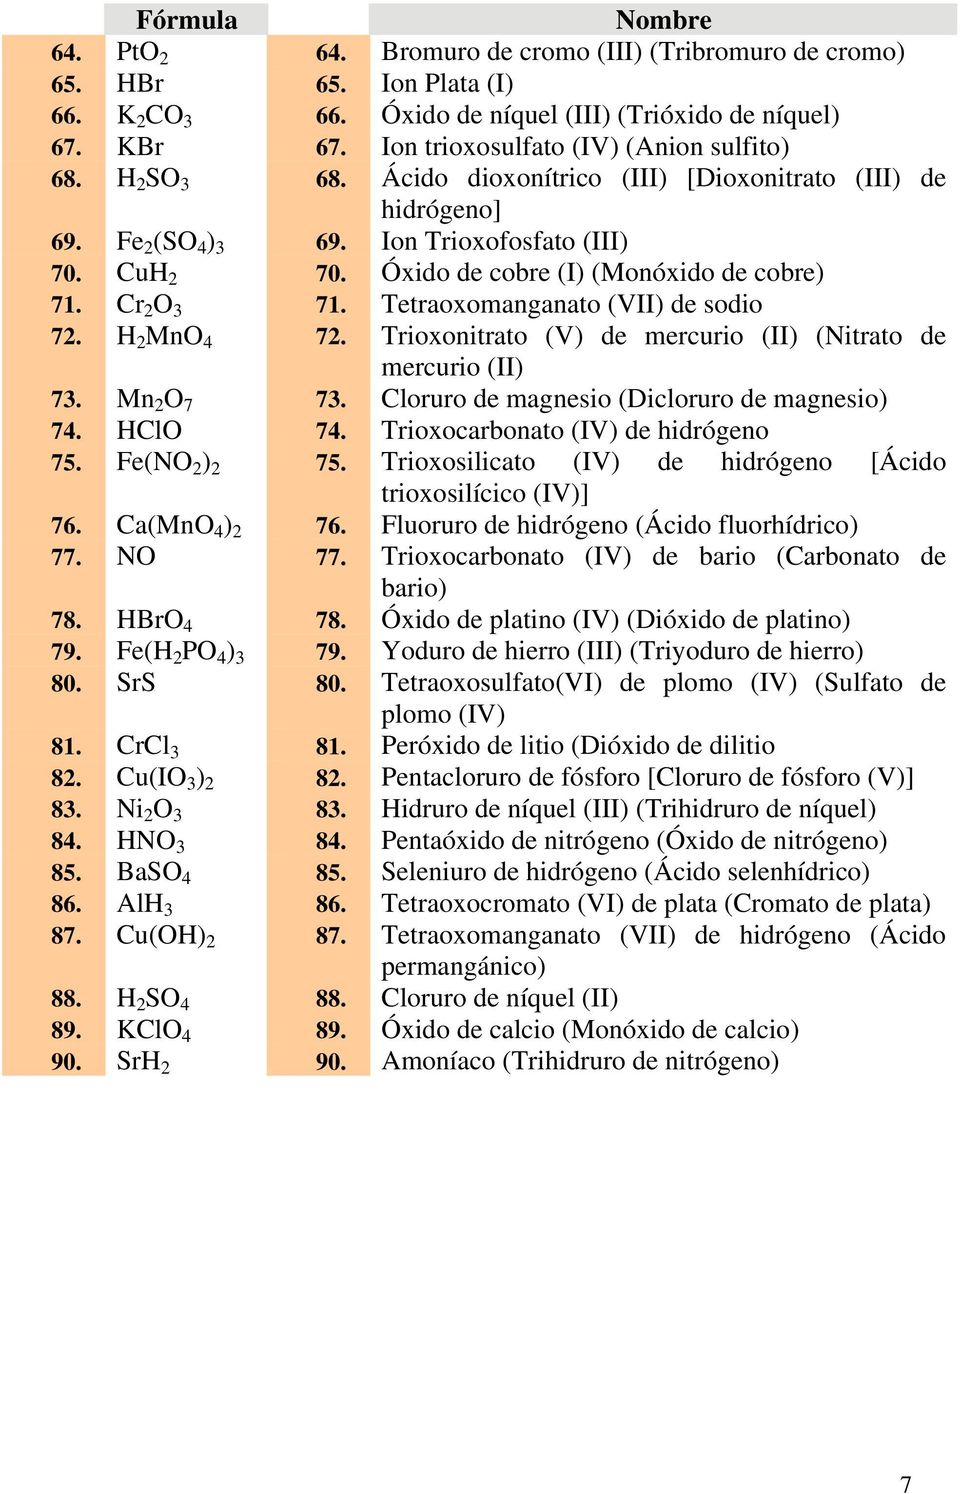 xido de cobre (I) (Mon $)A (. xido de cobre) 71. Cr 2 O 3 71. Tetraoxomanganato (VII) de sodio 72. H 2 MnO 4 72. Trioxonitrato (V) de mercurio (II) (Nitrato de mercurio (II) 73. Mn 2 O 7 73.